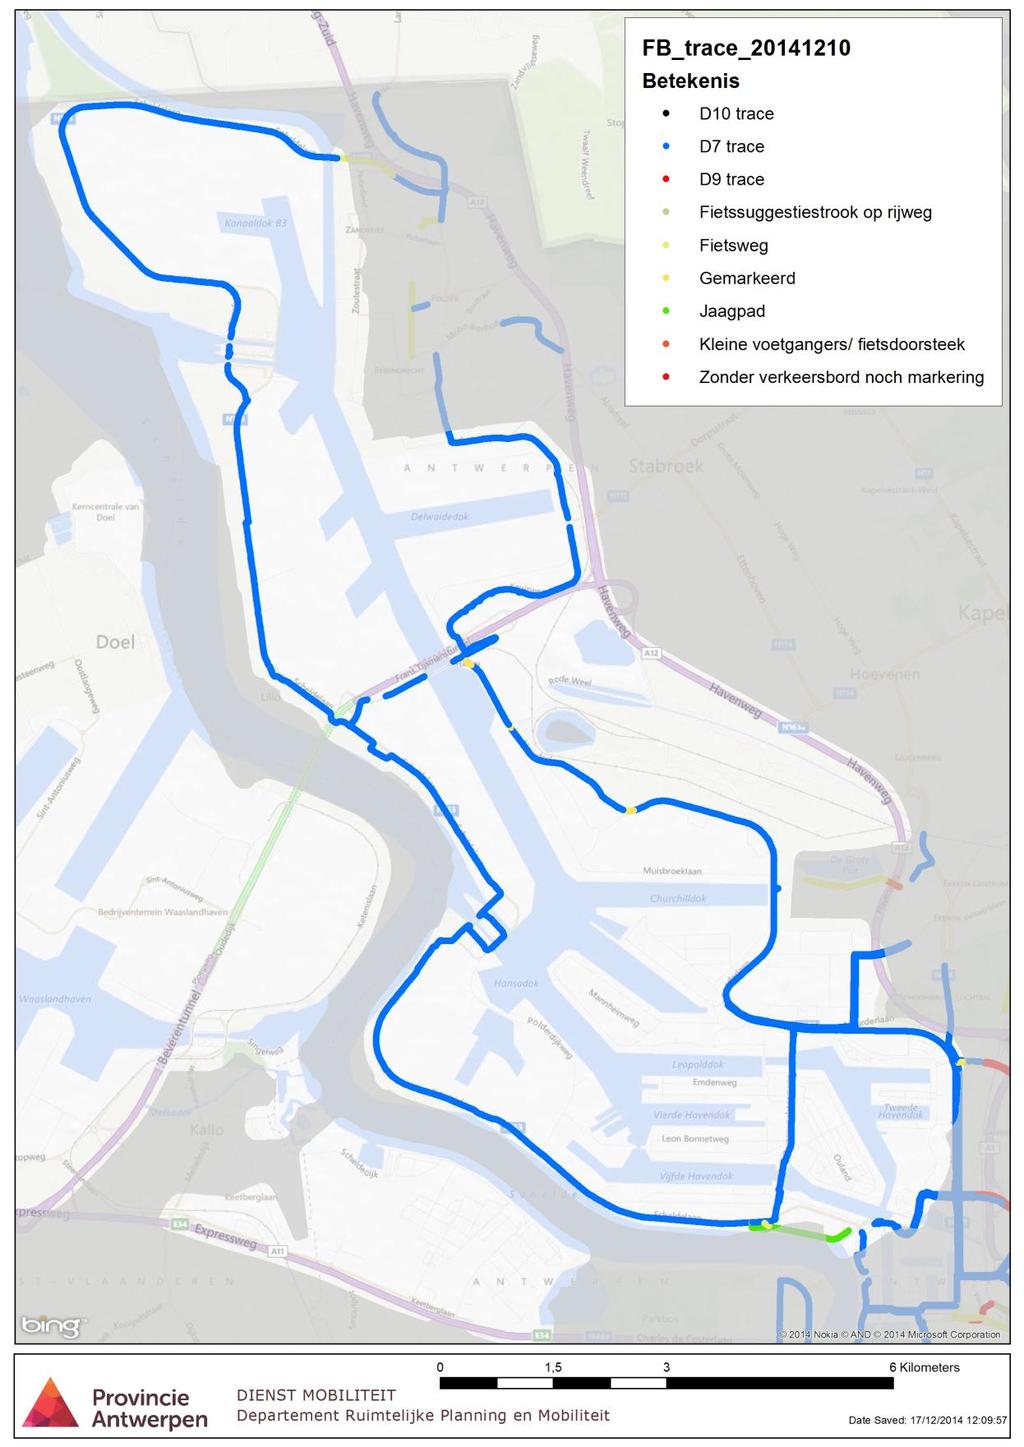 4.2.2.4 Type tracé Het grootste deel van BFFroutes in het GHA zijn D7 tracés (verplicht fietspad zonder voetgangers), met